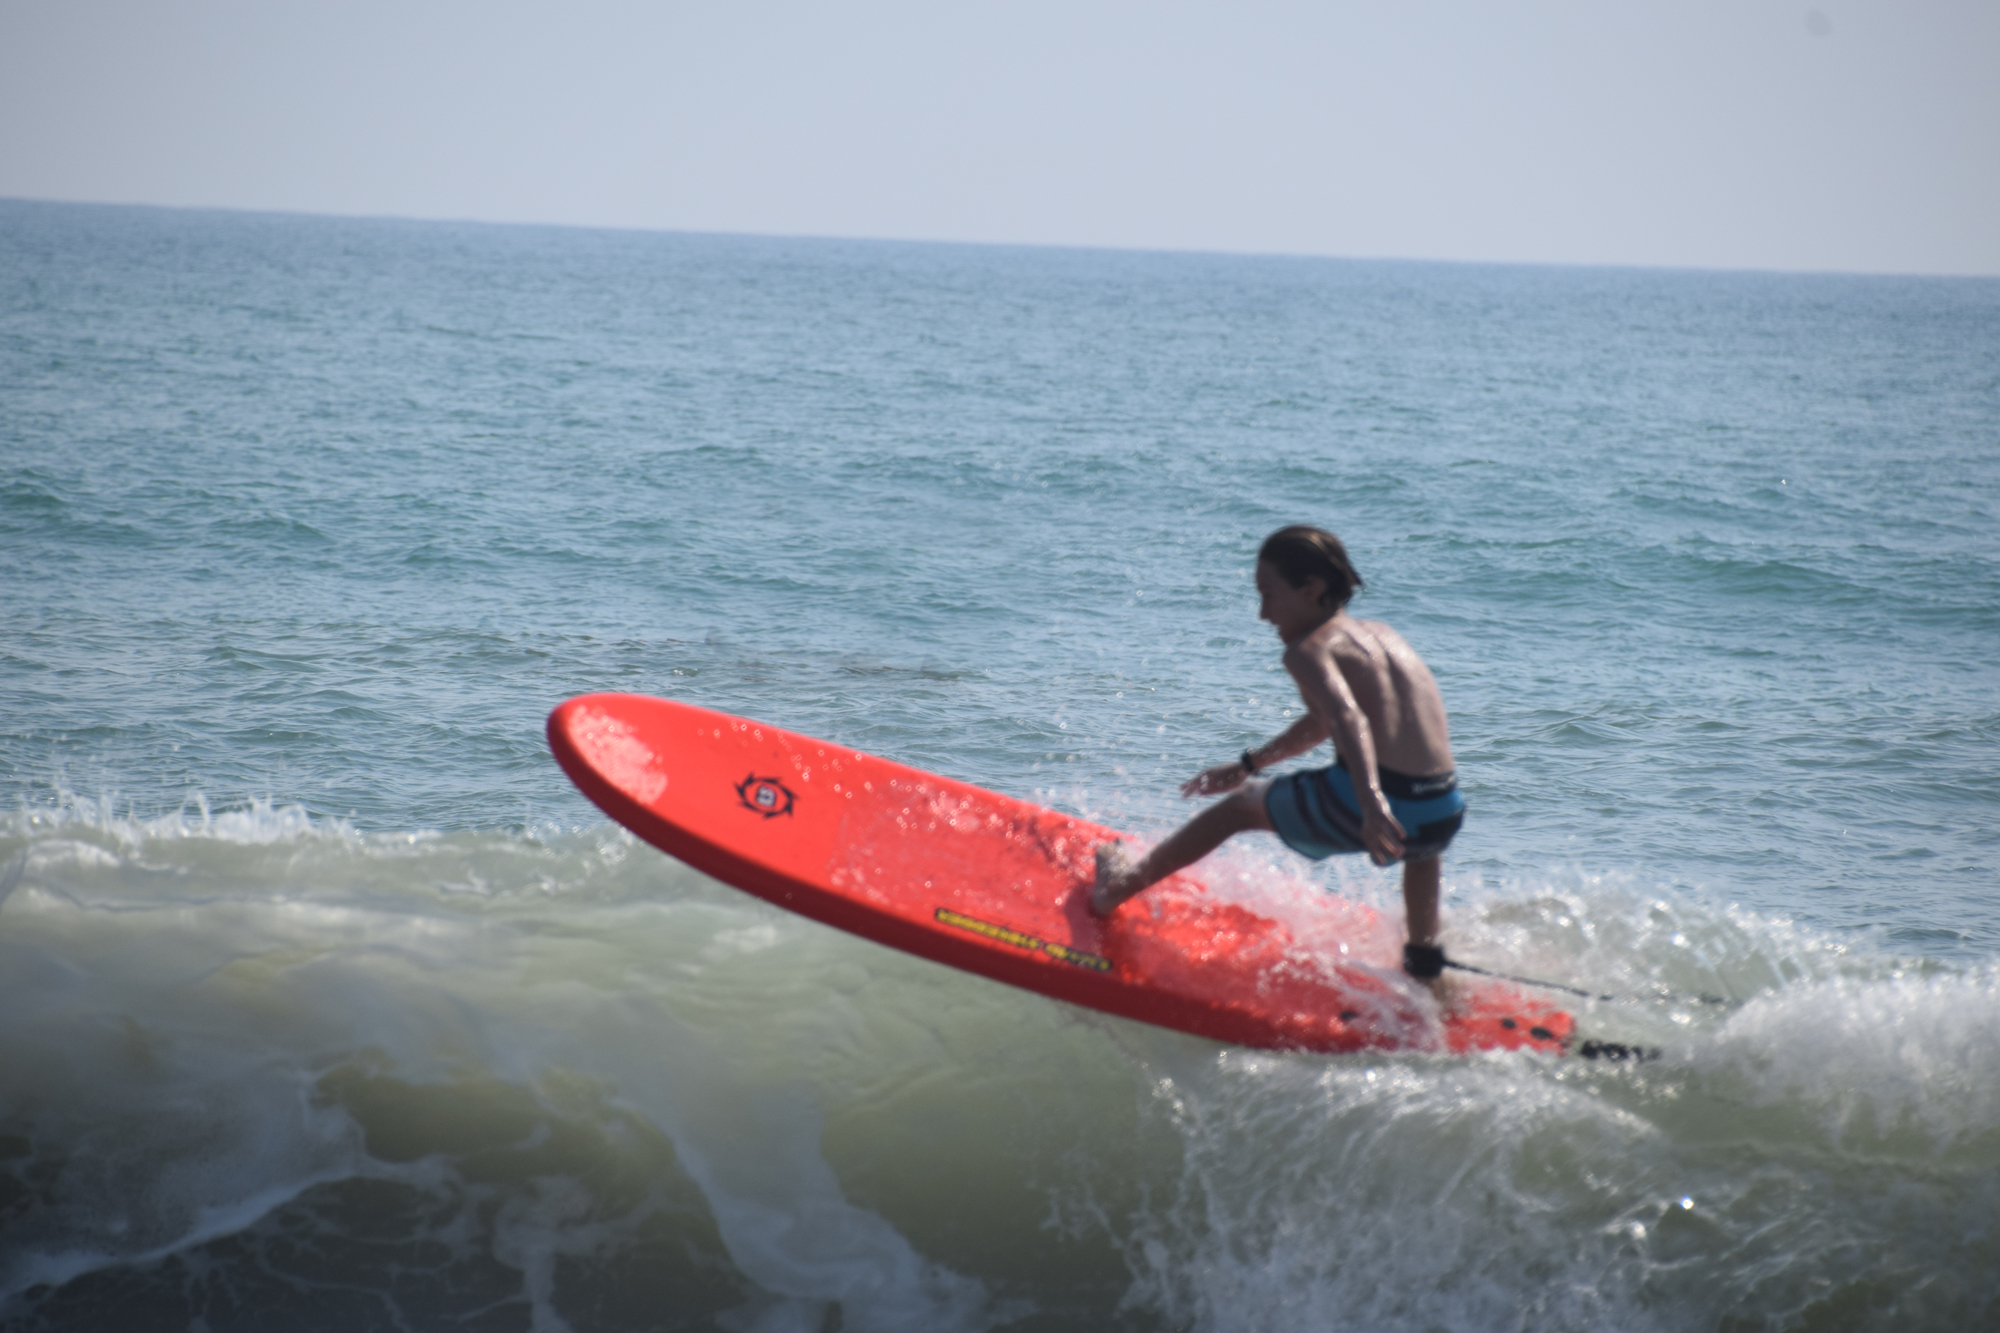 7ft FSE Foamie Soft Surfboard for beginners kids adult surfers